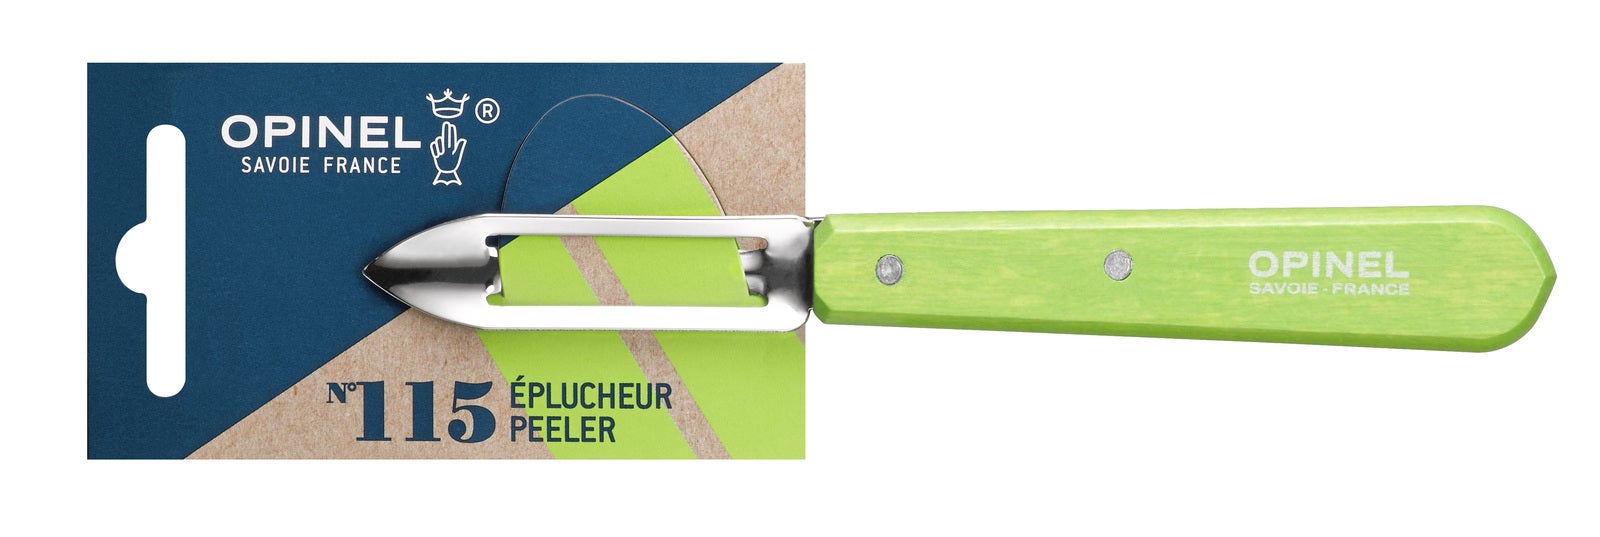 Opinel 001930 - 6cm Stainless Steel Vegetable Peeler (Apple Green Handle)